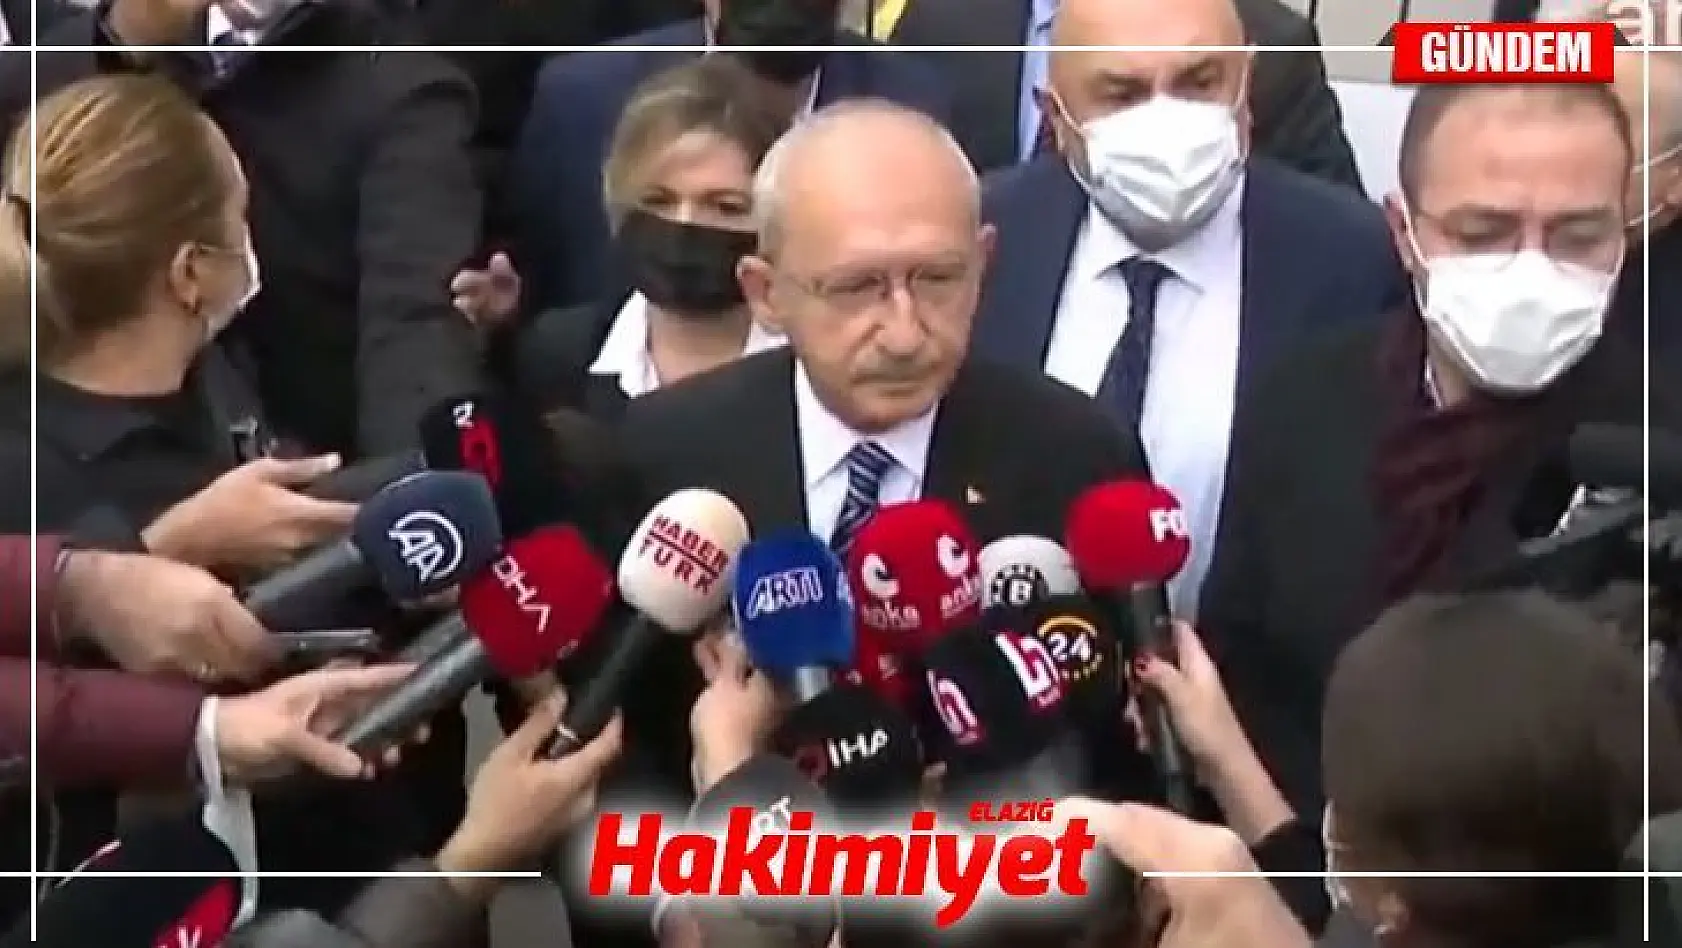 Bilgi almak için TÜİK'e giden CHP Genel Başkanı Kemal Kılıçdaroğlu içeri alınmadı